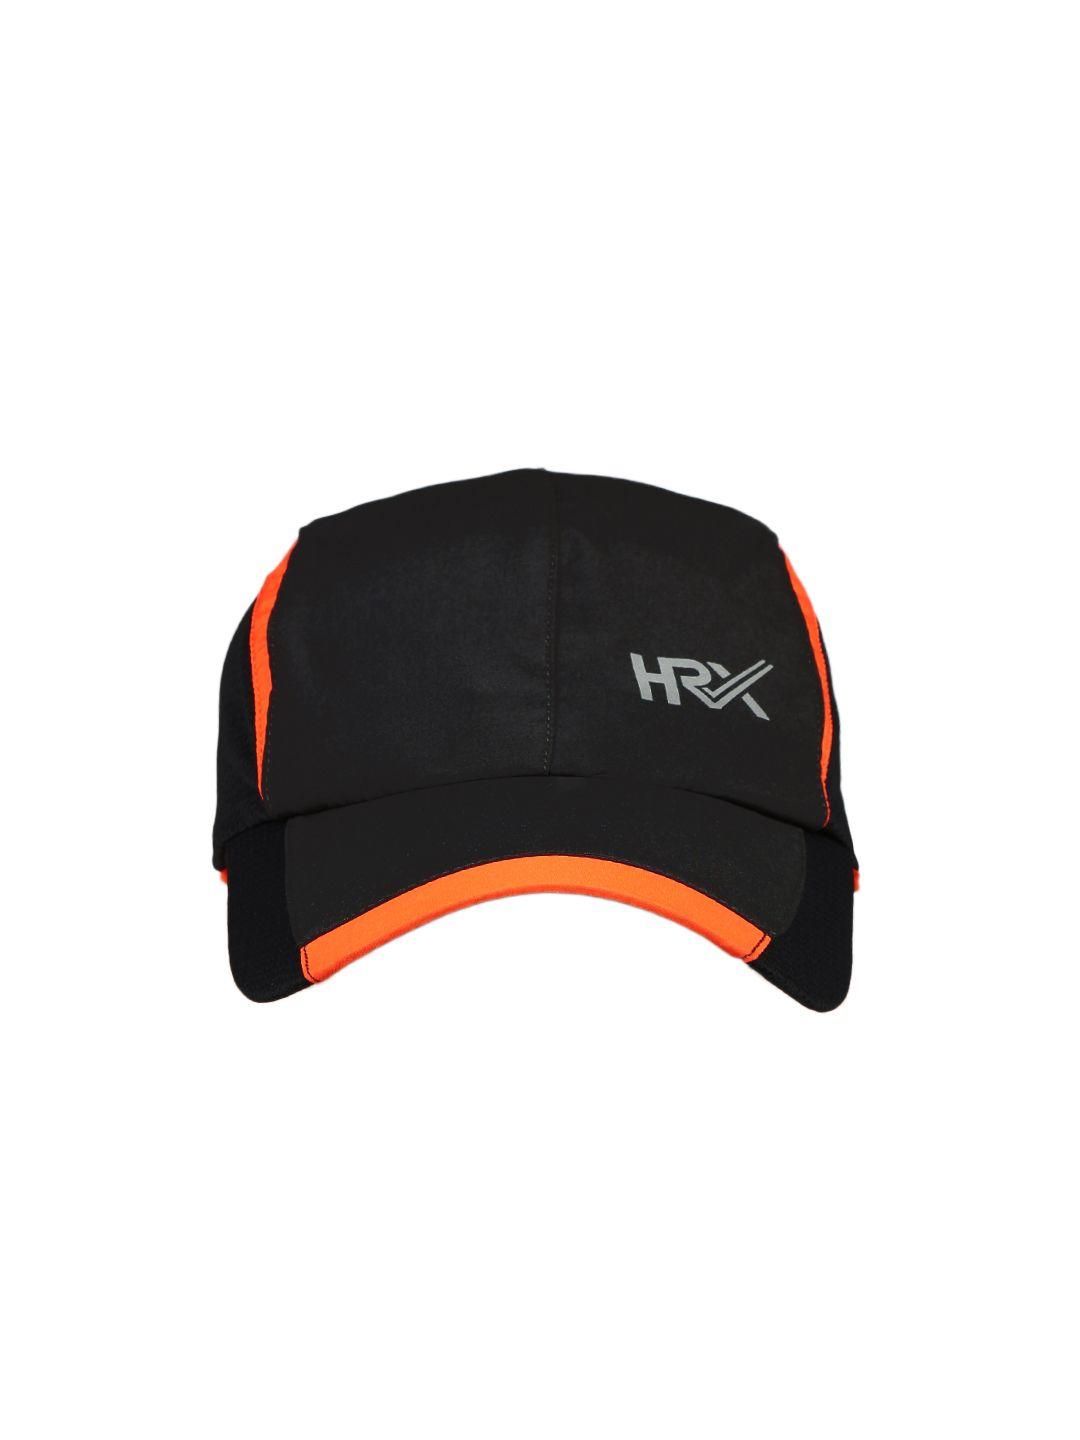 hrx by hrithik roshan men black & orange colourblocked running dryfit cap